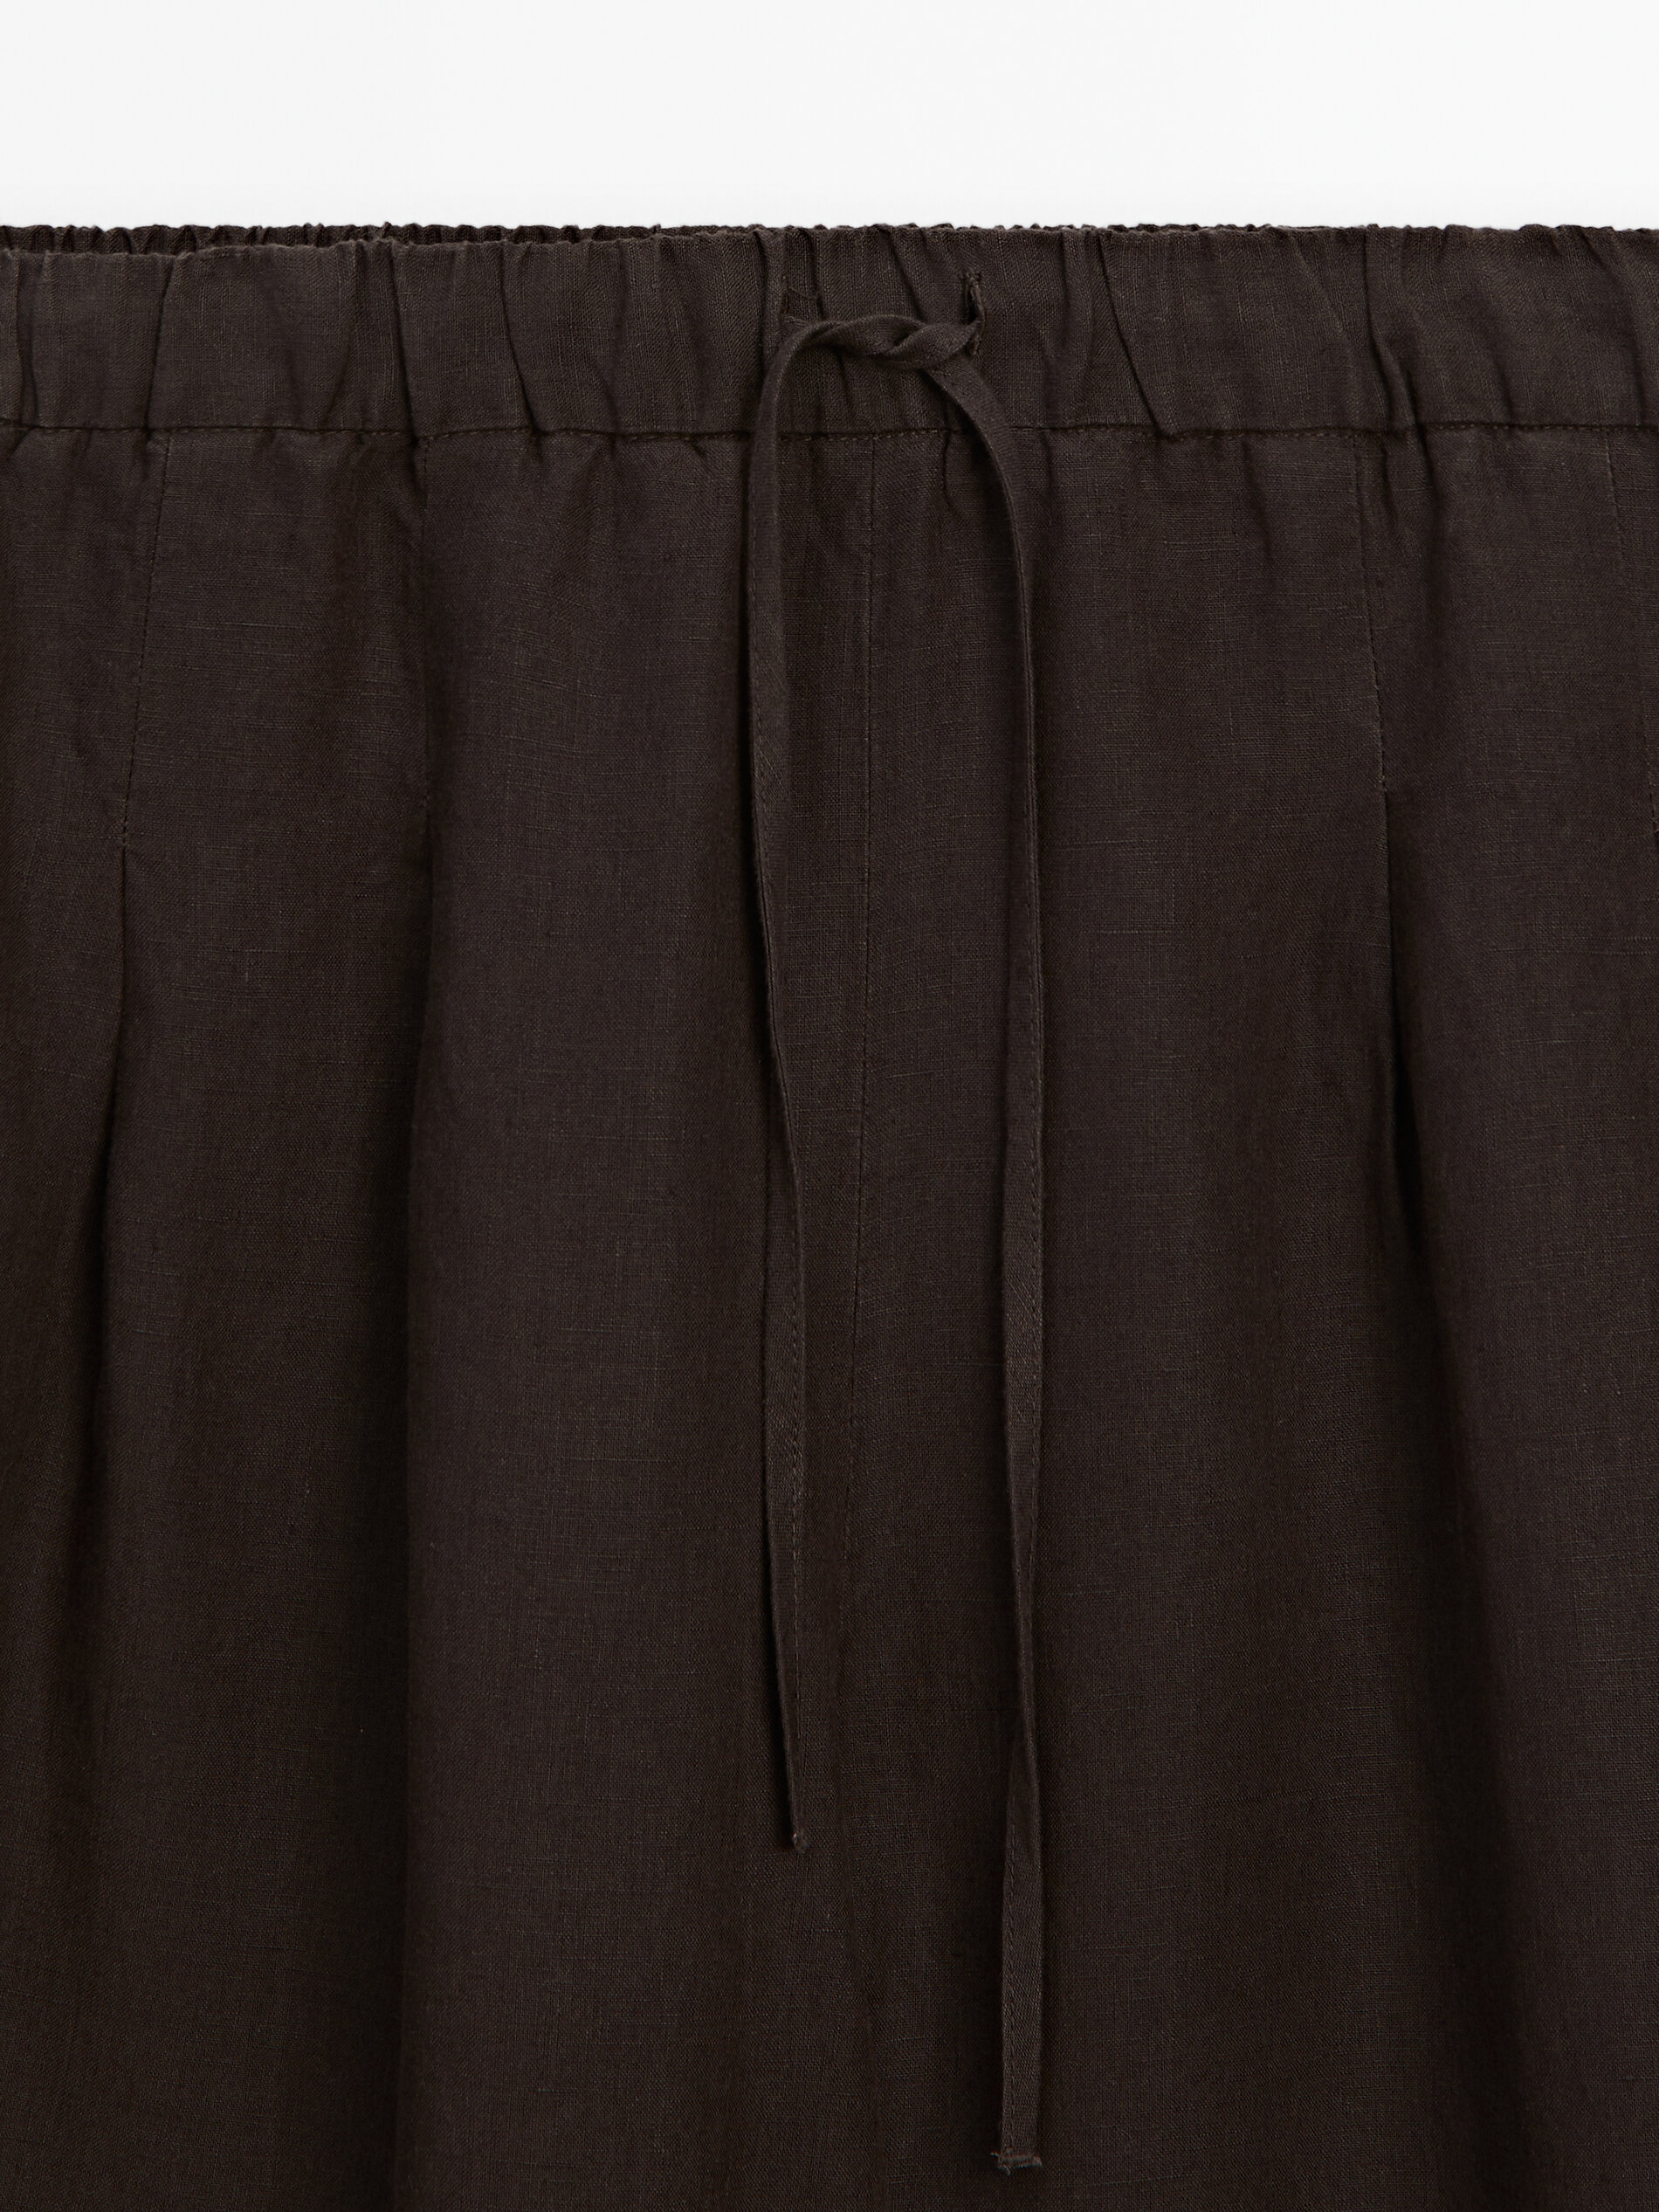 Pantalón traje barrel 100% lino pinzas